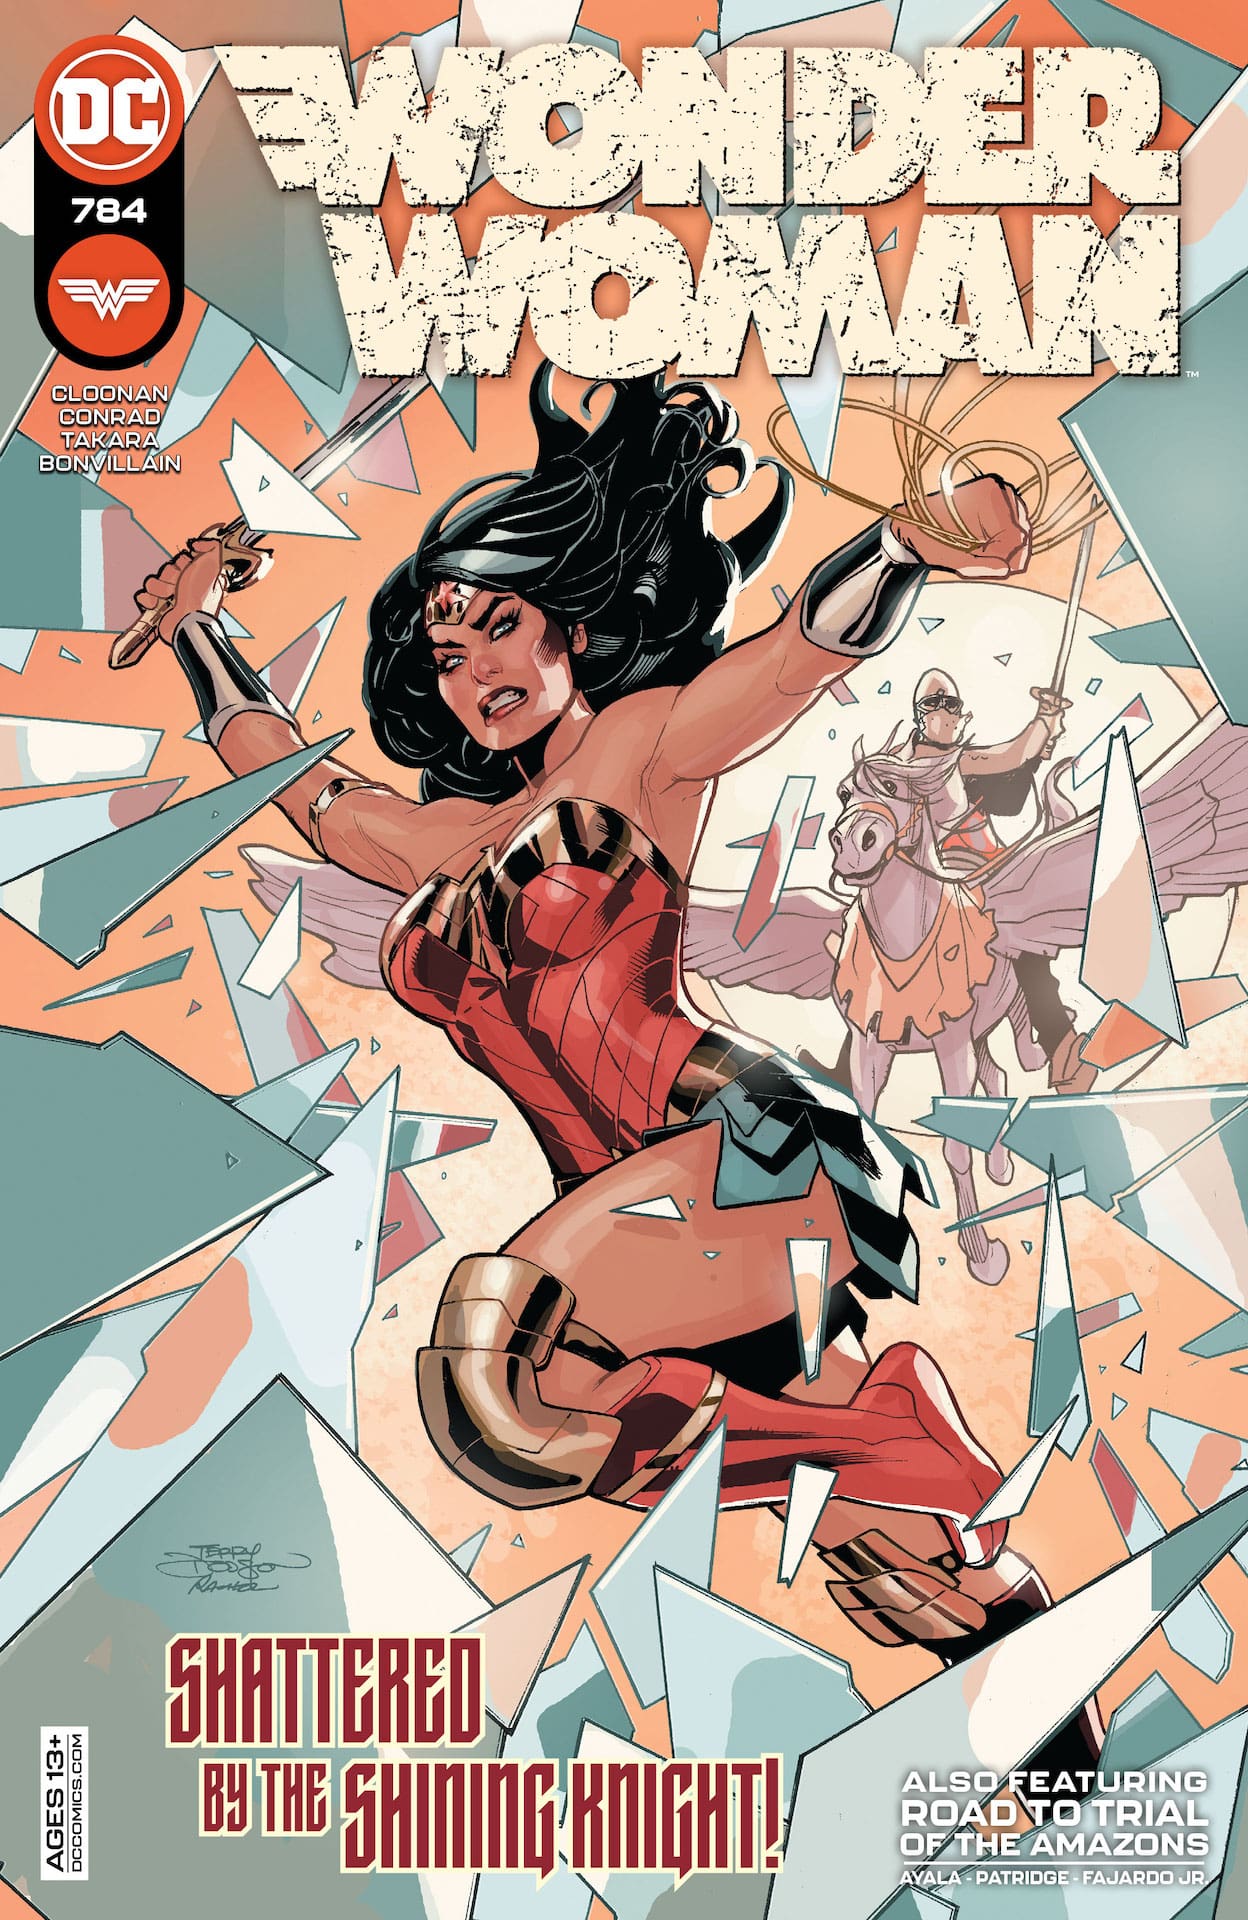 DC Preview: Wonder Woman #784